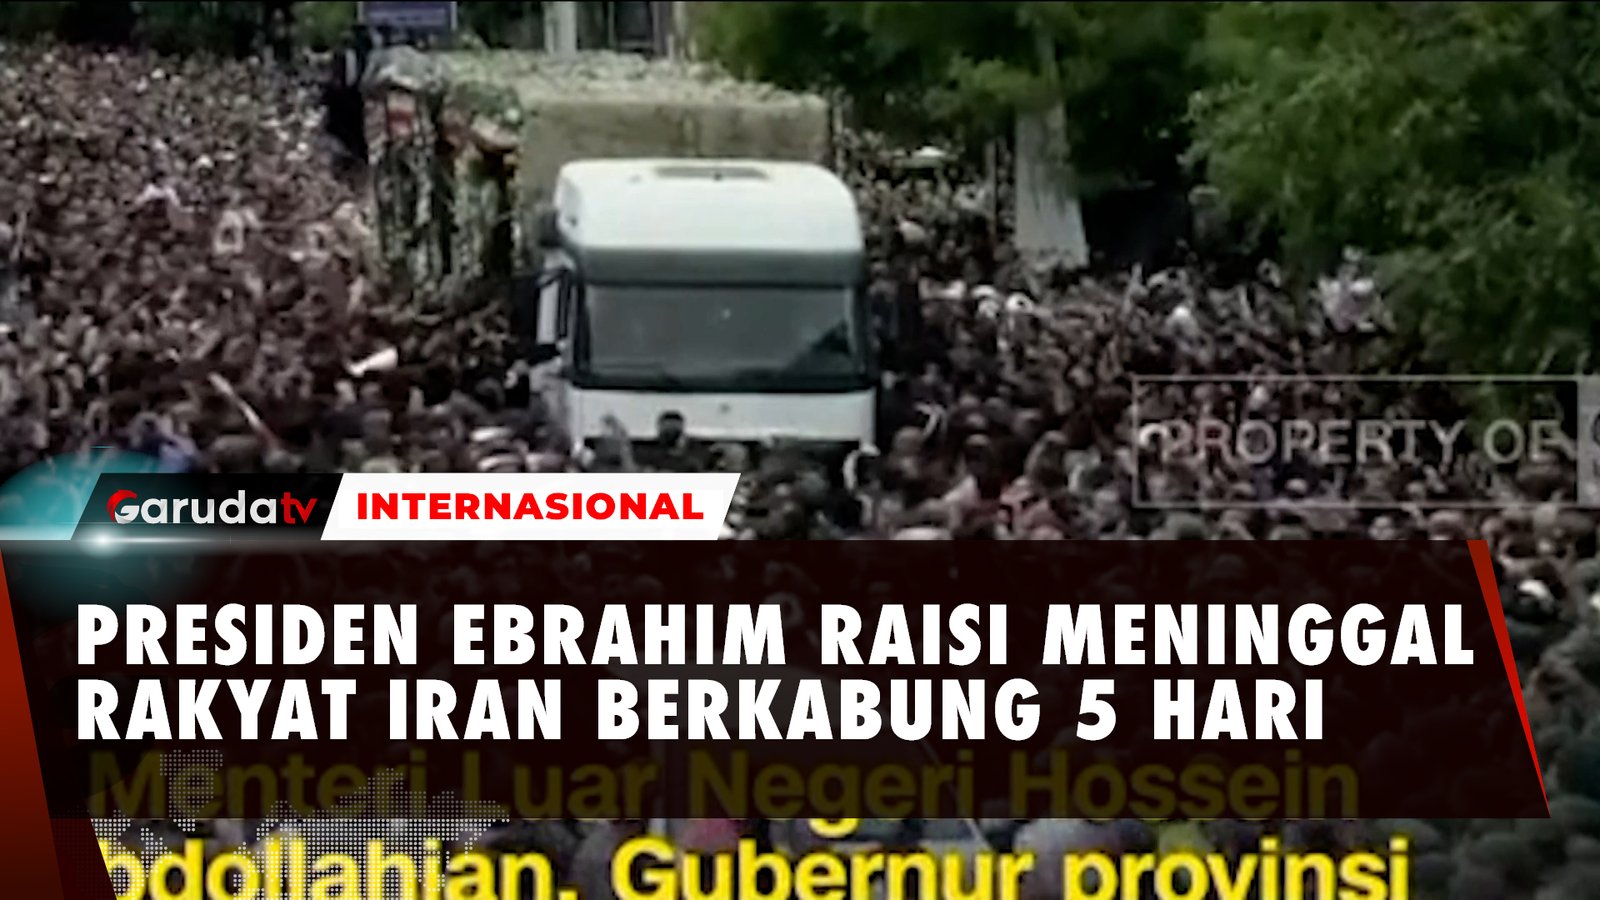 Iran dalam Masa Berkabung 5 Hari Menyusul Kematian Presiden republik Iran Ebrahim Raisi